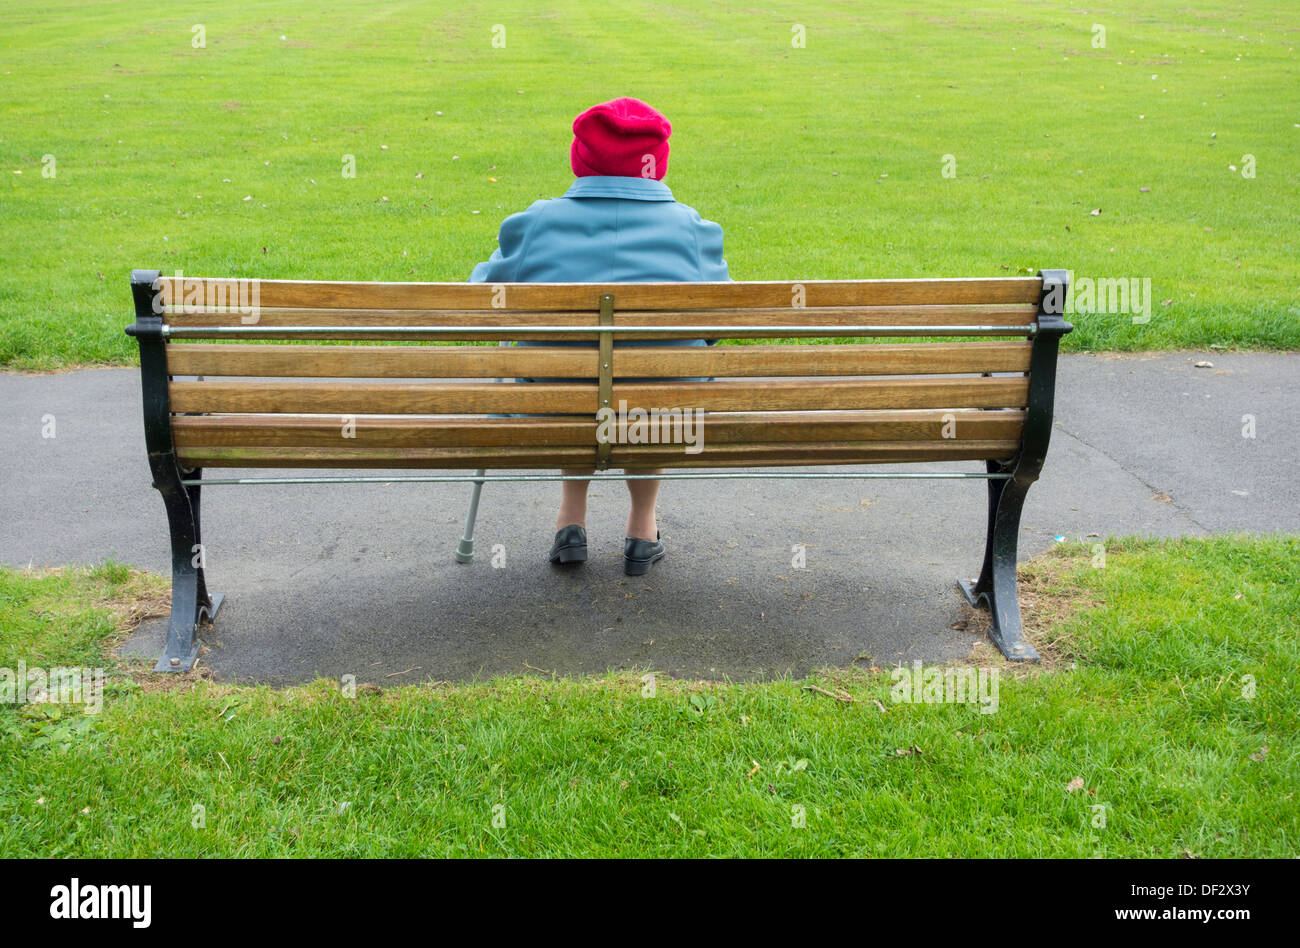 Ninety year old lady alone on park bench. UK Stock Photo